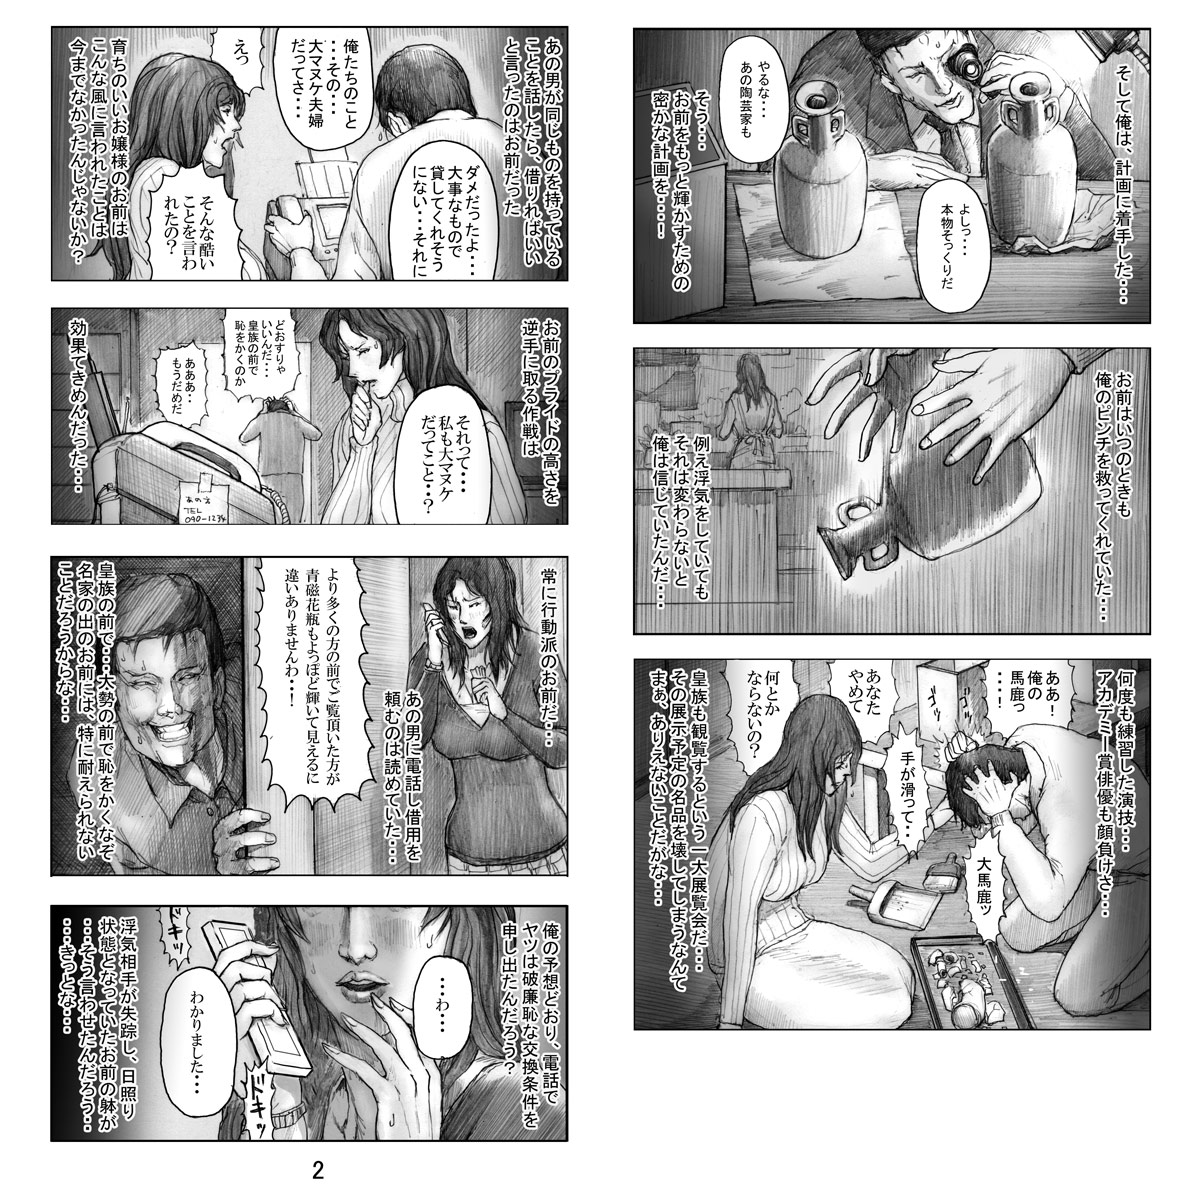 [Noysca] Utsukushii no Shingen Part 6 [Noysca] 美の真眼 第六部